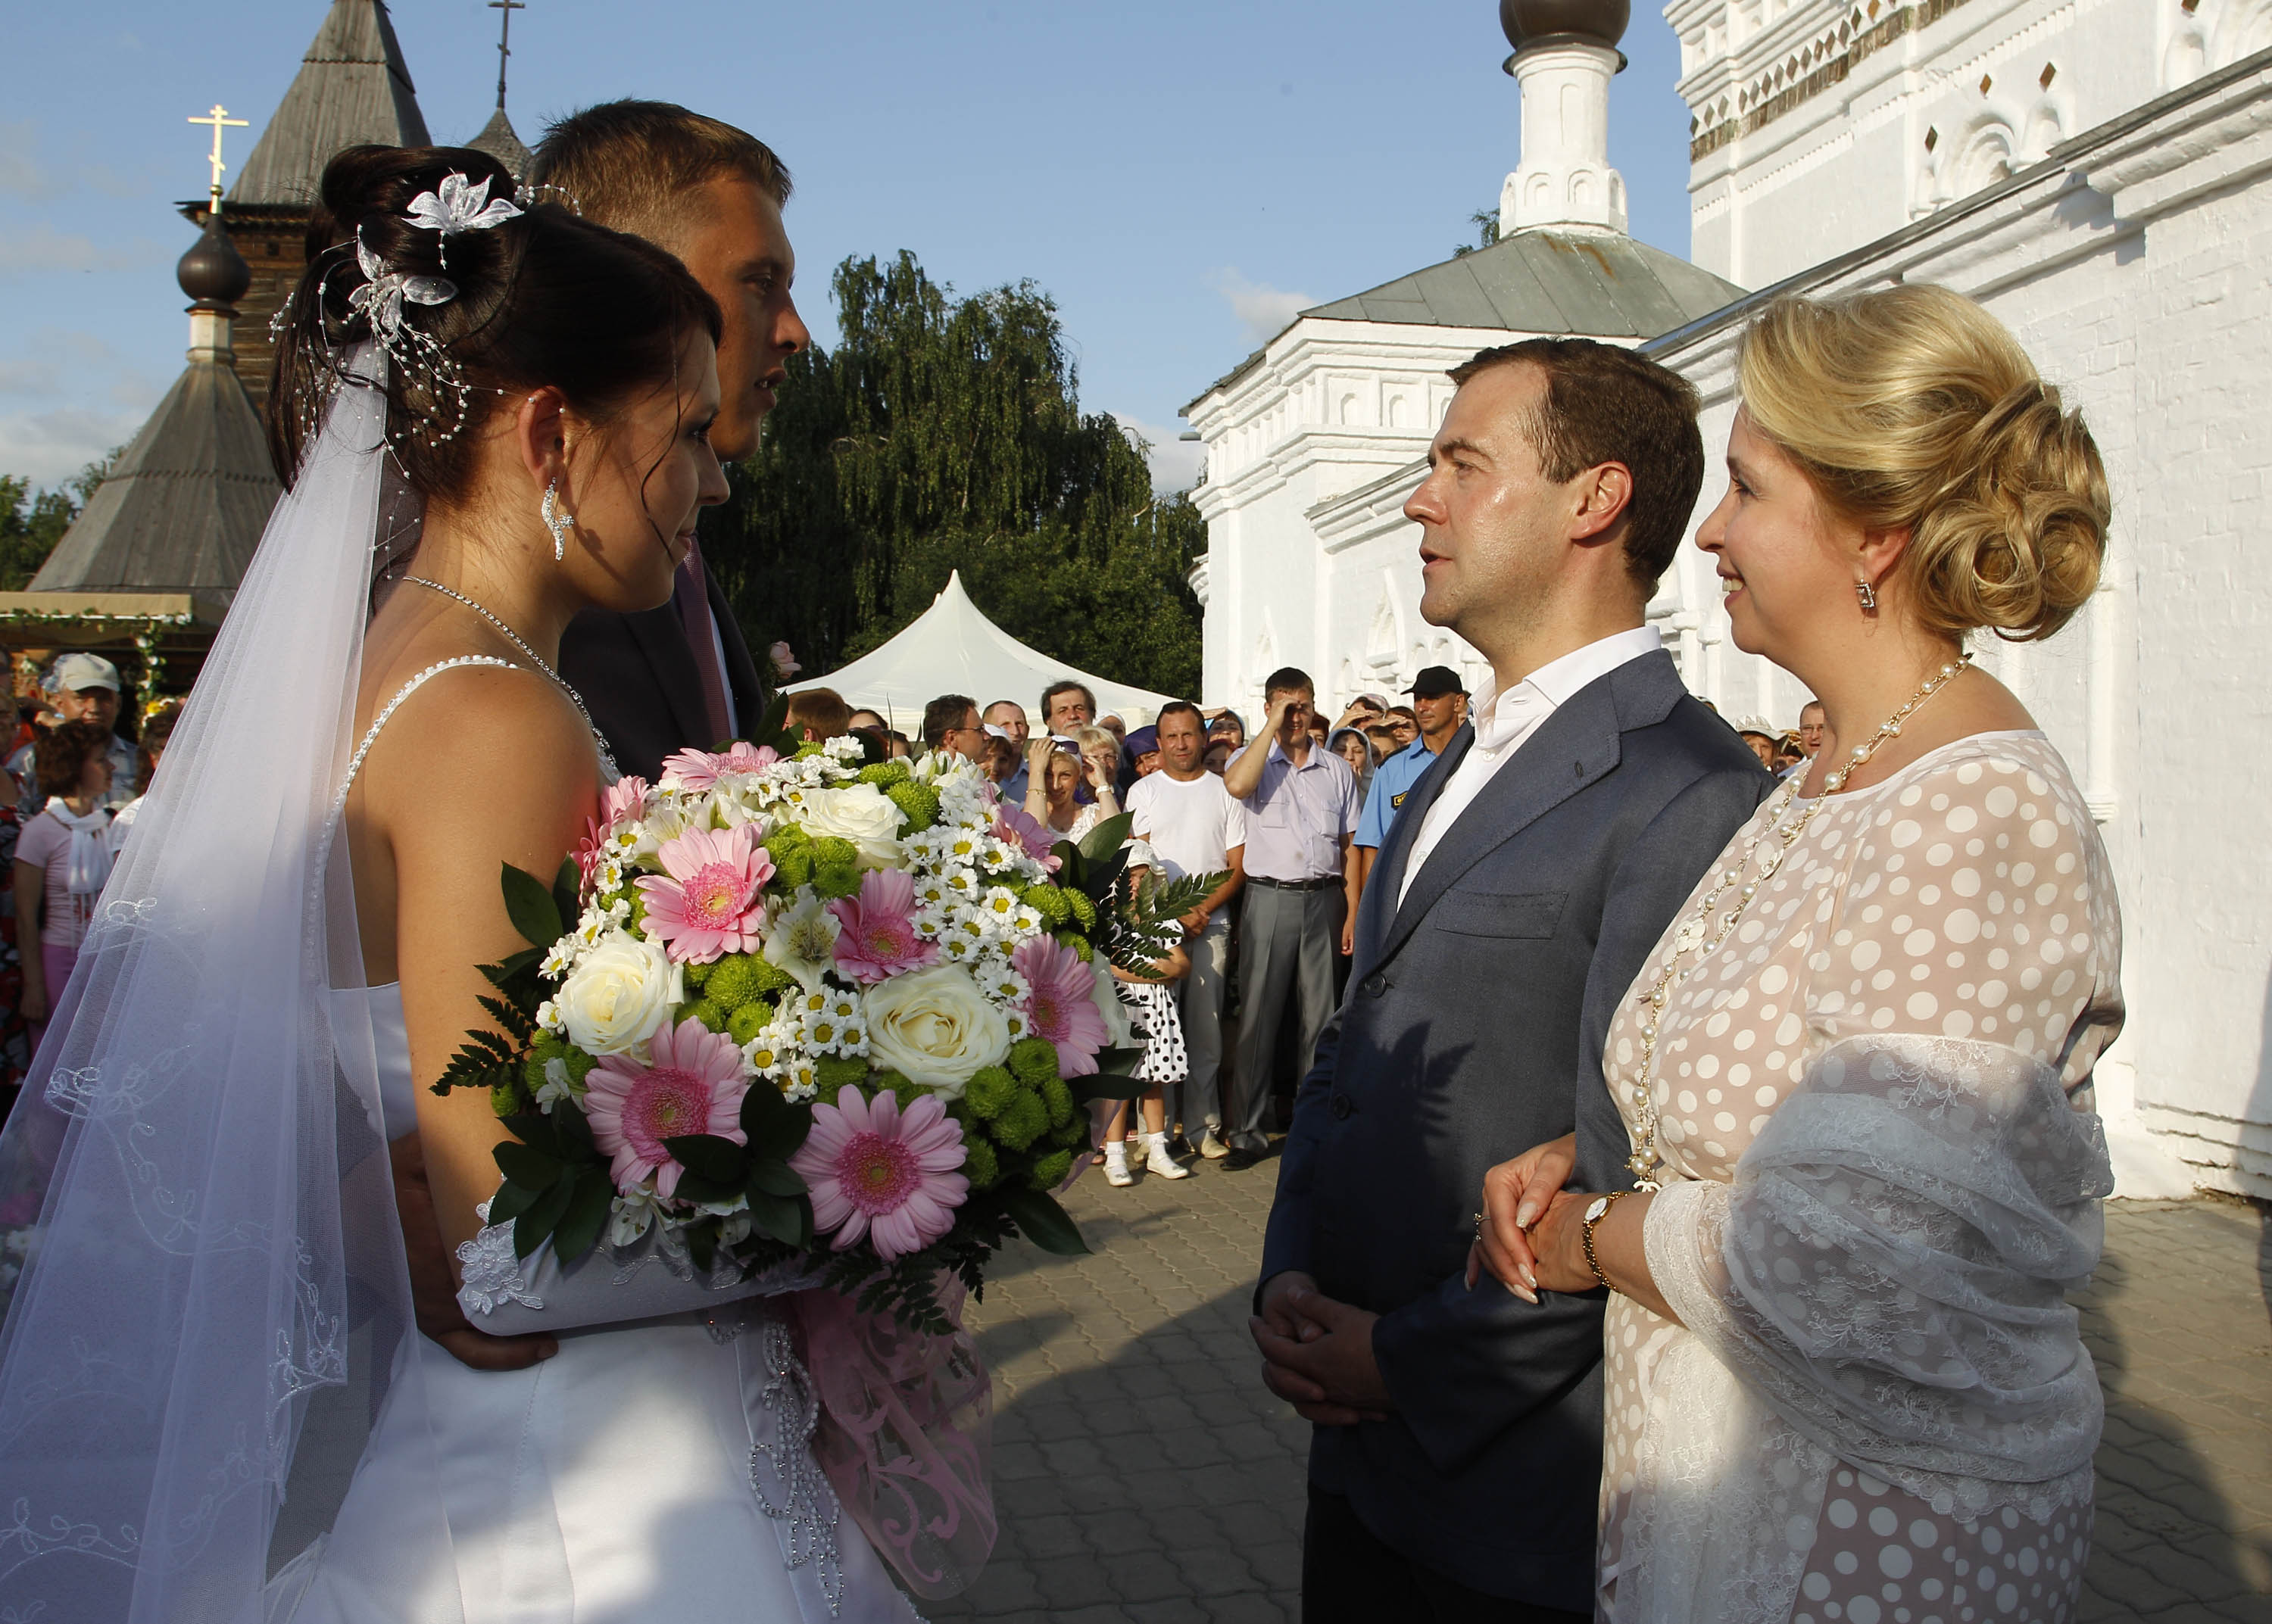 Пожениться в год семьи. Свадьба Дмитрия Медведева.